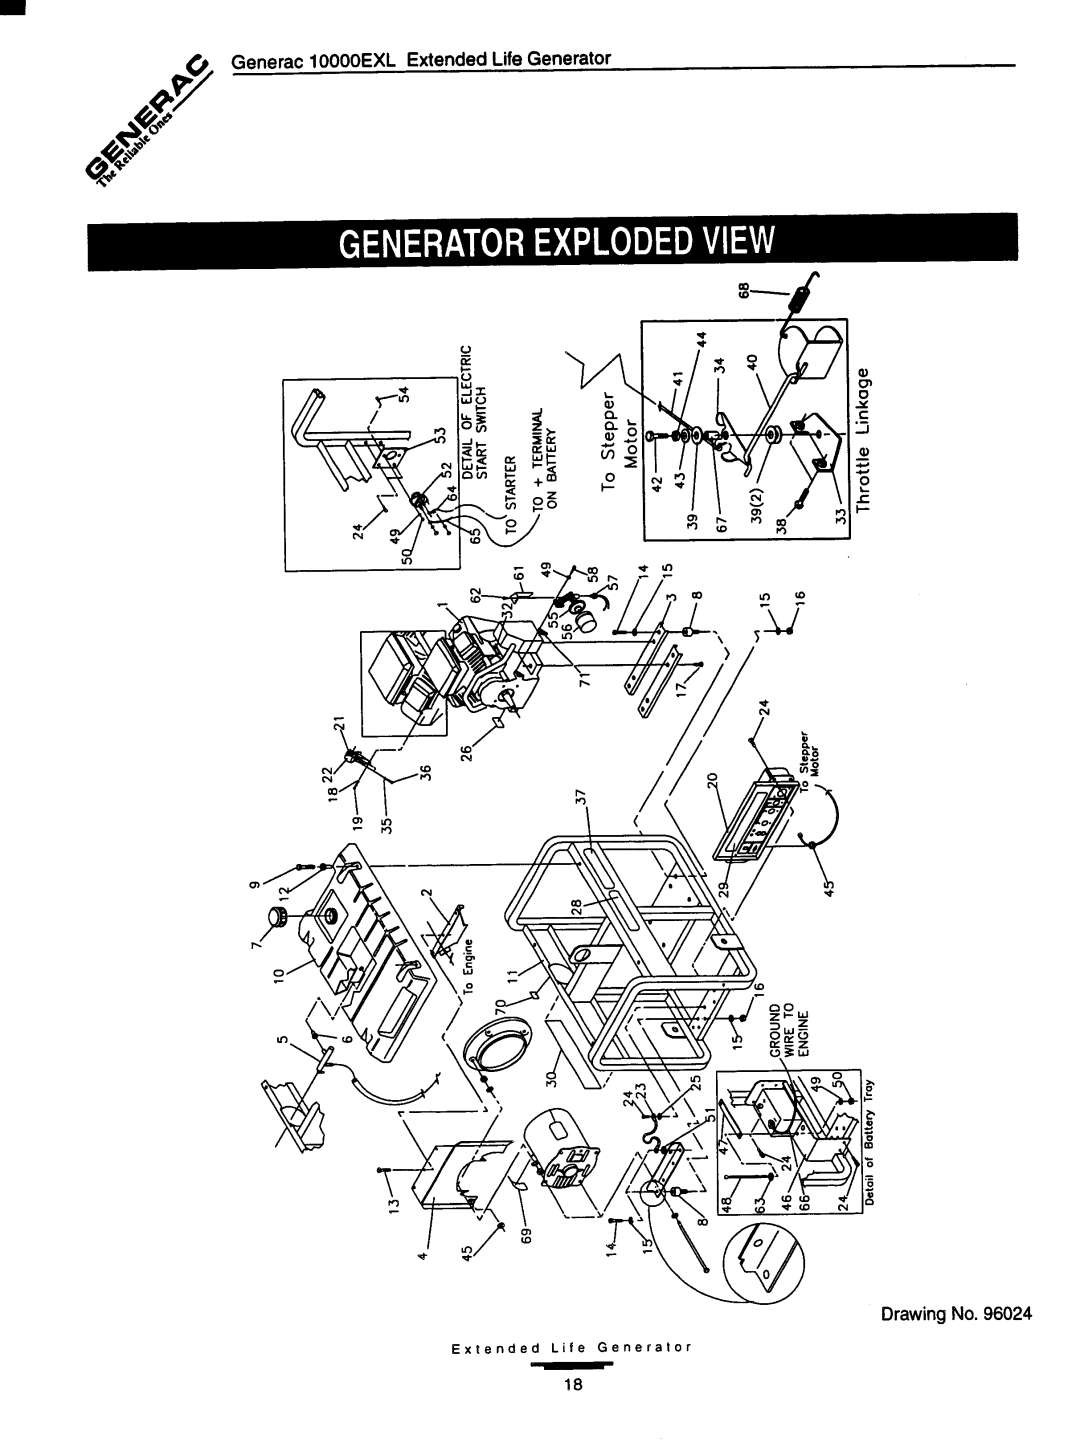 Generac 10000EXL manual 